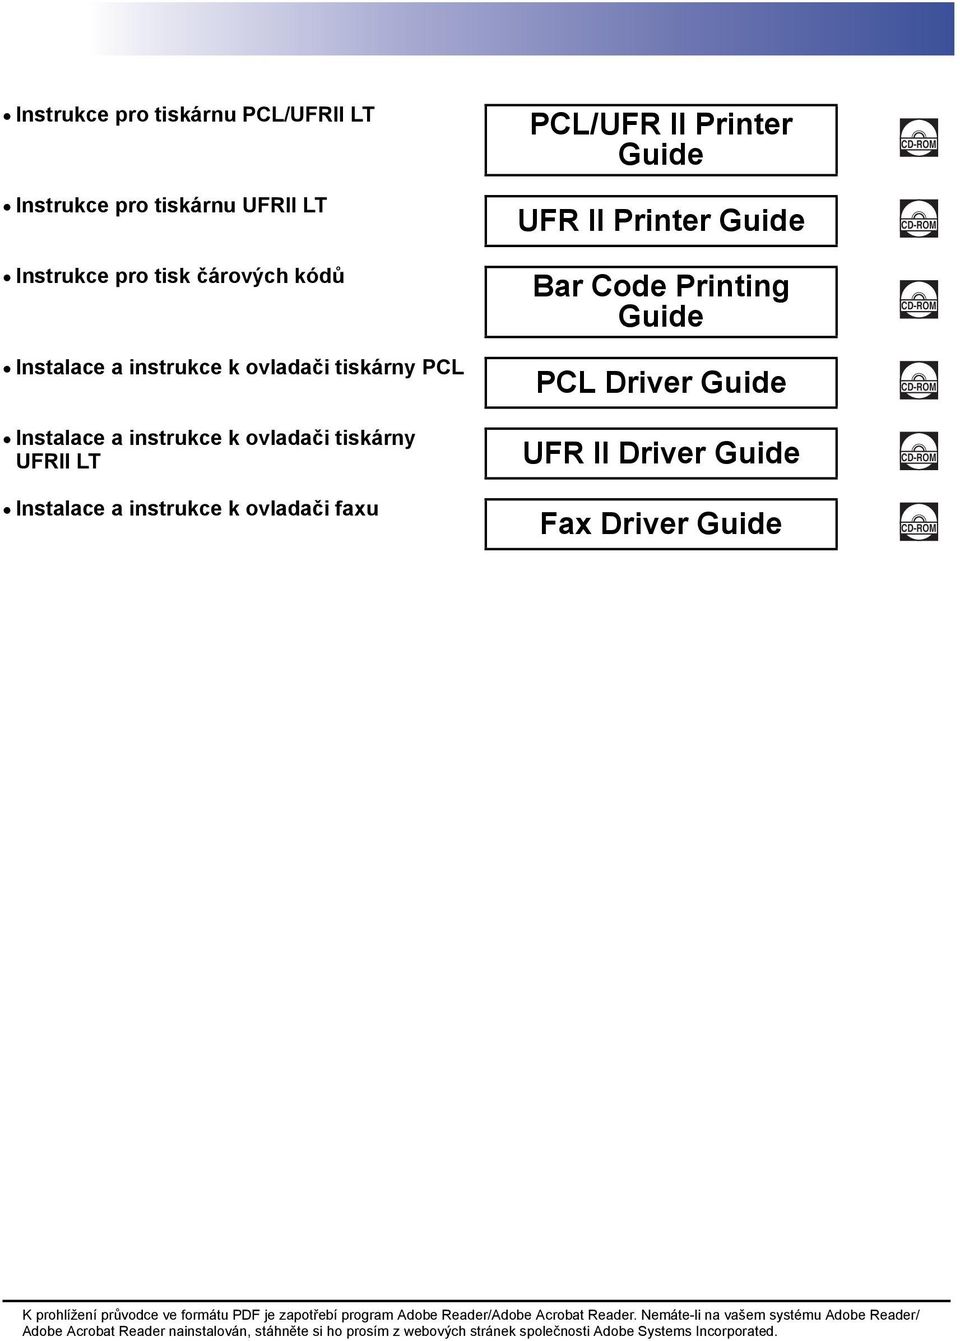 Driver Guide CD-ROM Instalace a instrukce k ovladači faxu Fax Driver Guide CD-ROM K prohlížení průvodce ve formátu PDF je zapotřebí program Adobe Reader/Adobe